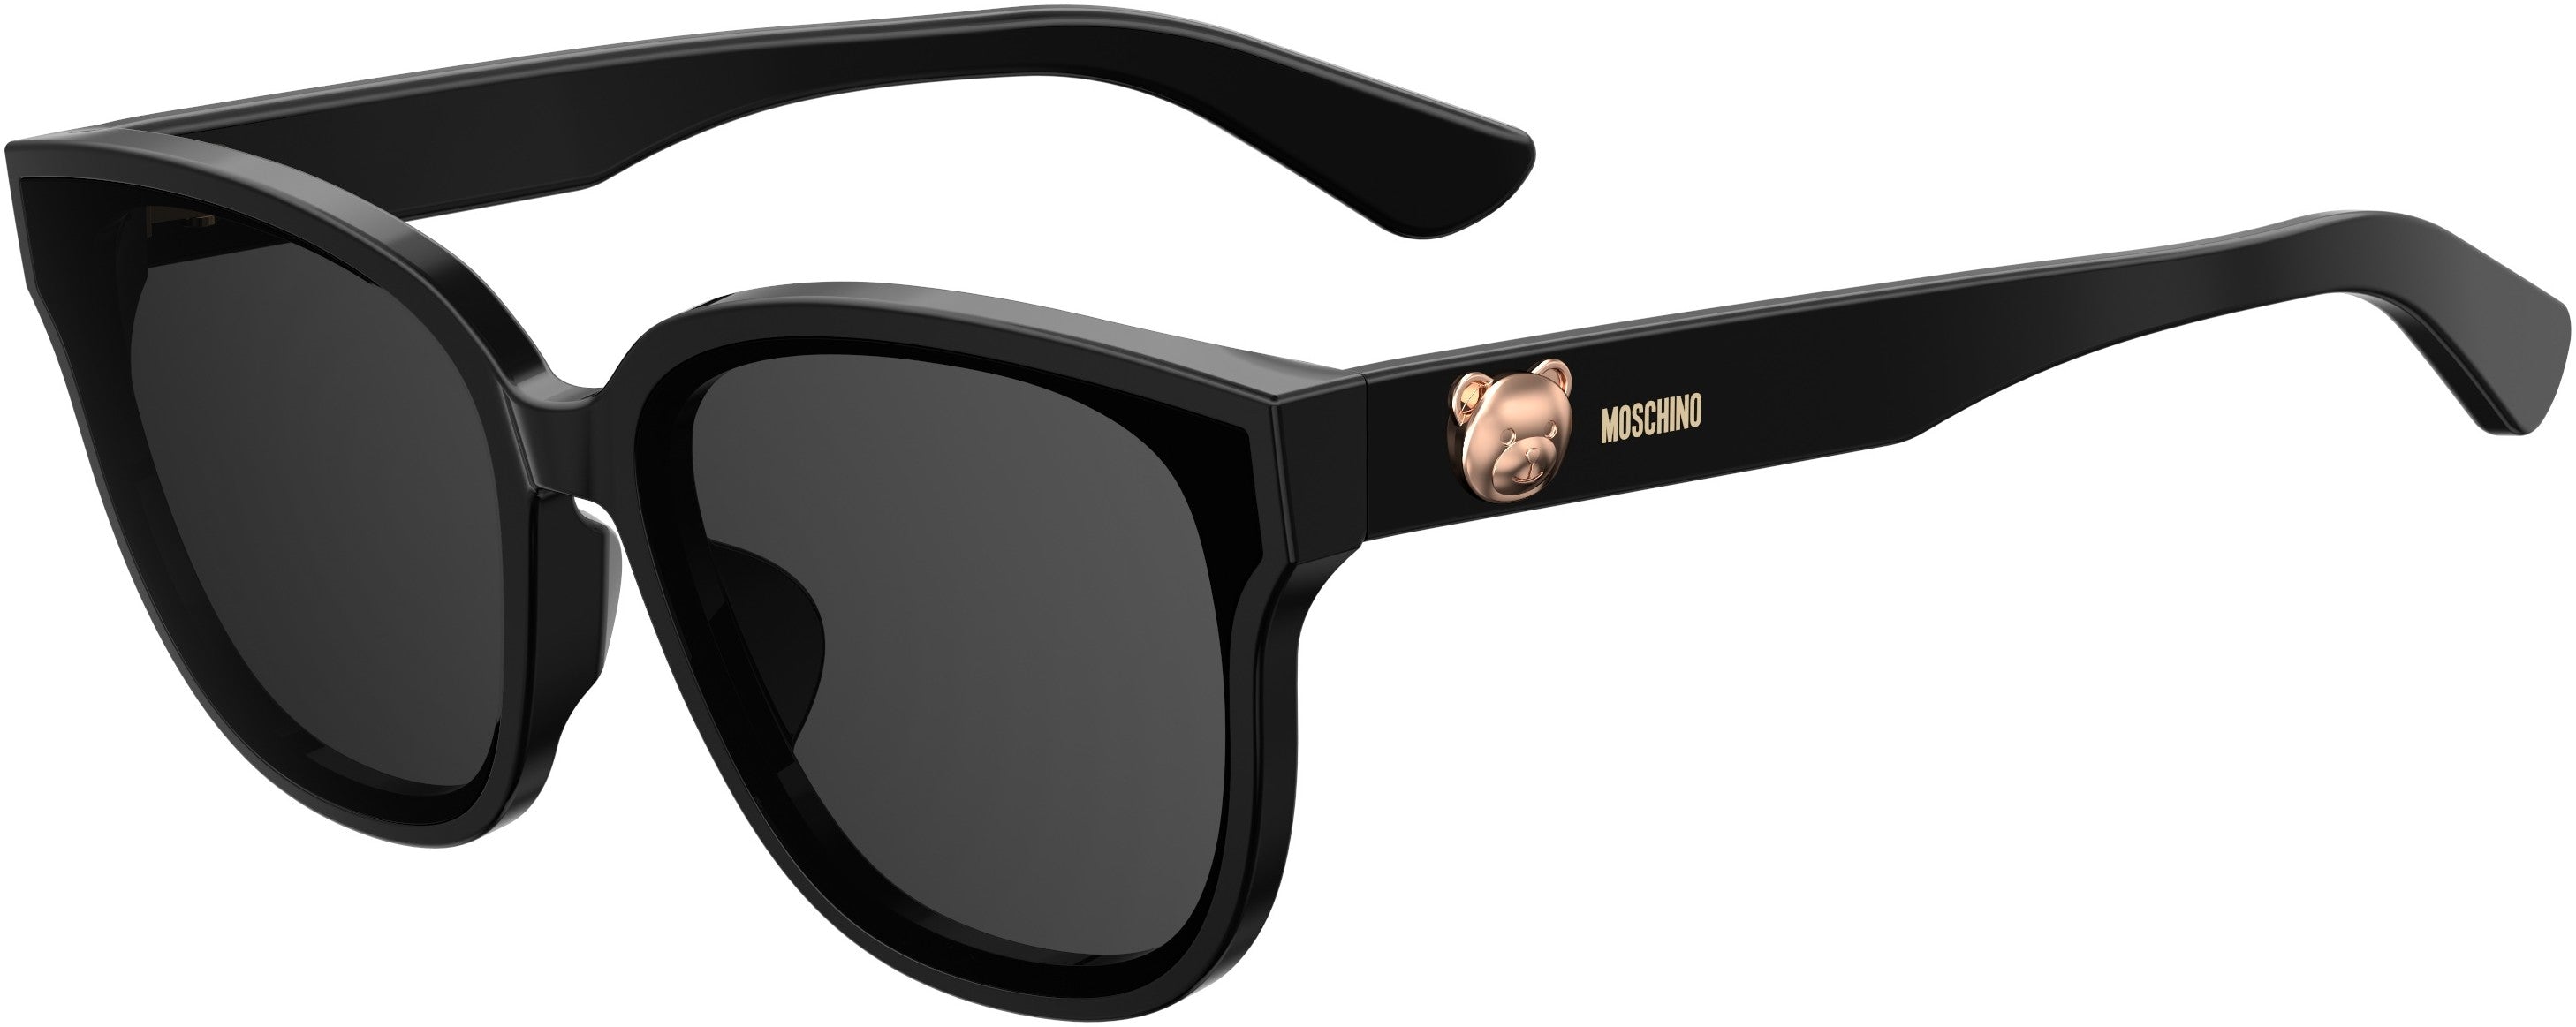  Moschino 060/F/S Rectangular Sunglasses 0807-0807  Black (IR Gray)